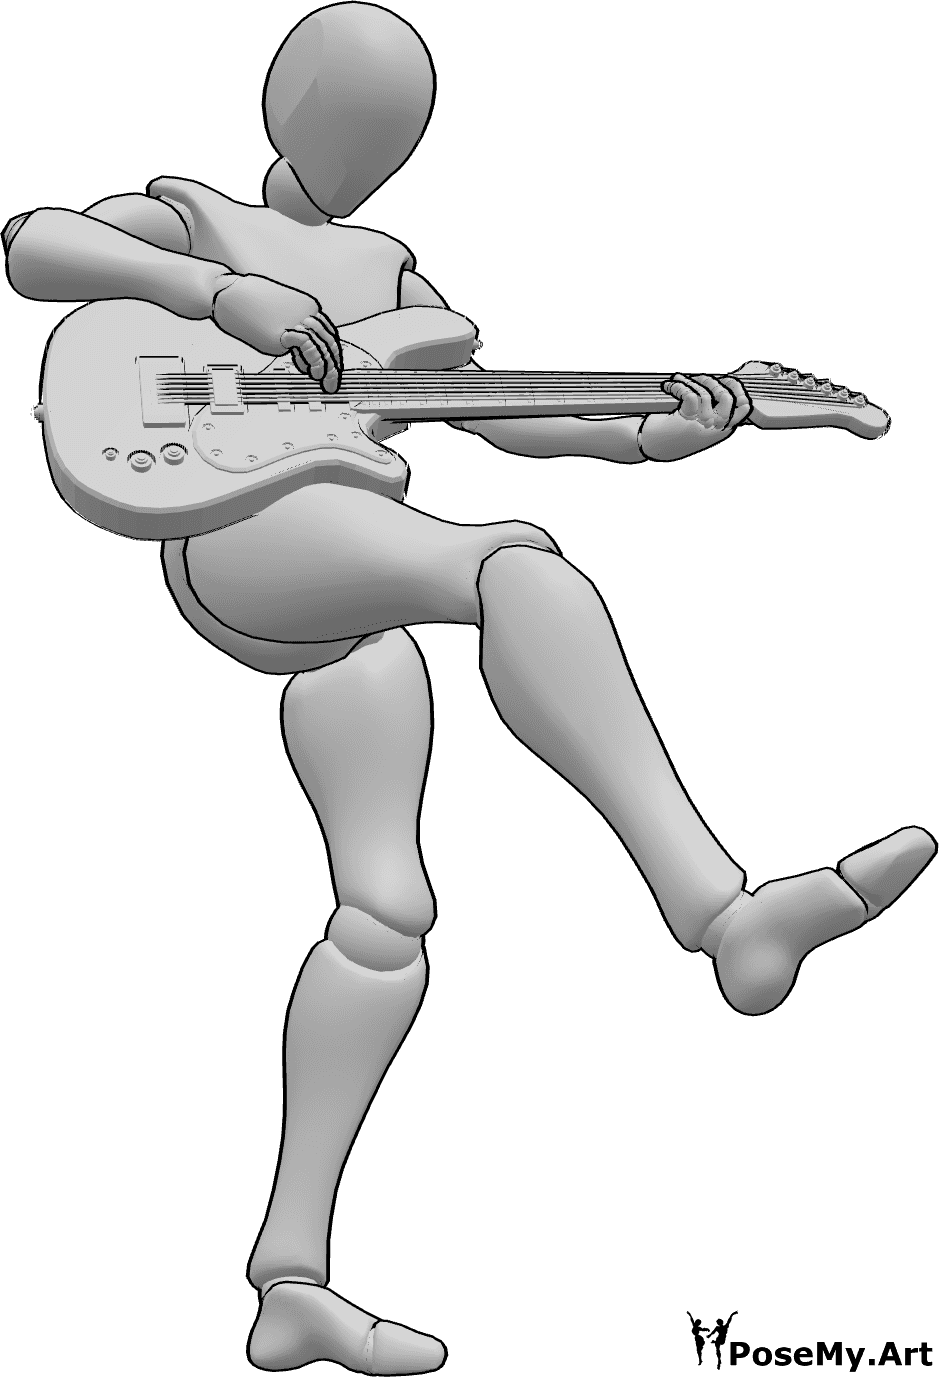 Referência de poses- Mulher a dançar a fazer pose - Mulher a dançar, de pé sobre o pé esquerdo e a levantar a perna direita enquanto toca guitarra eléctrica